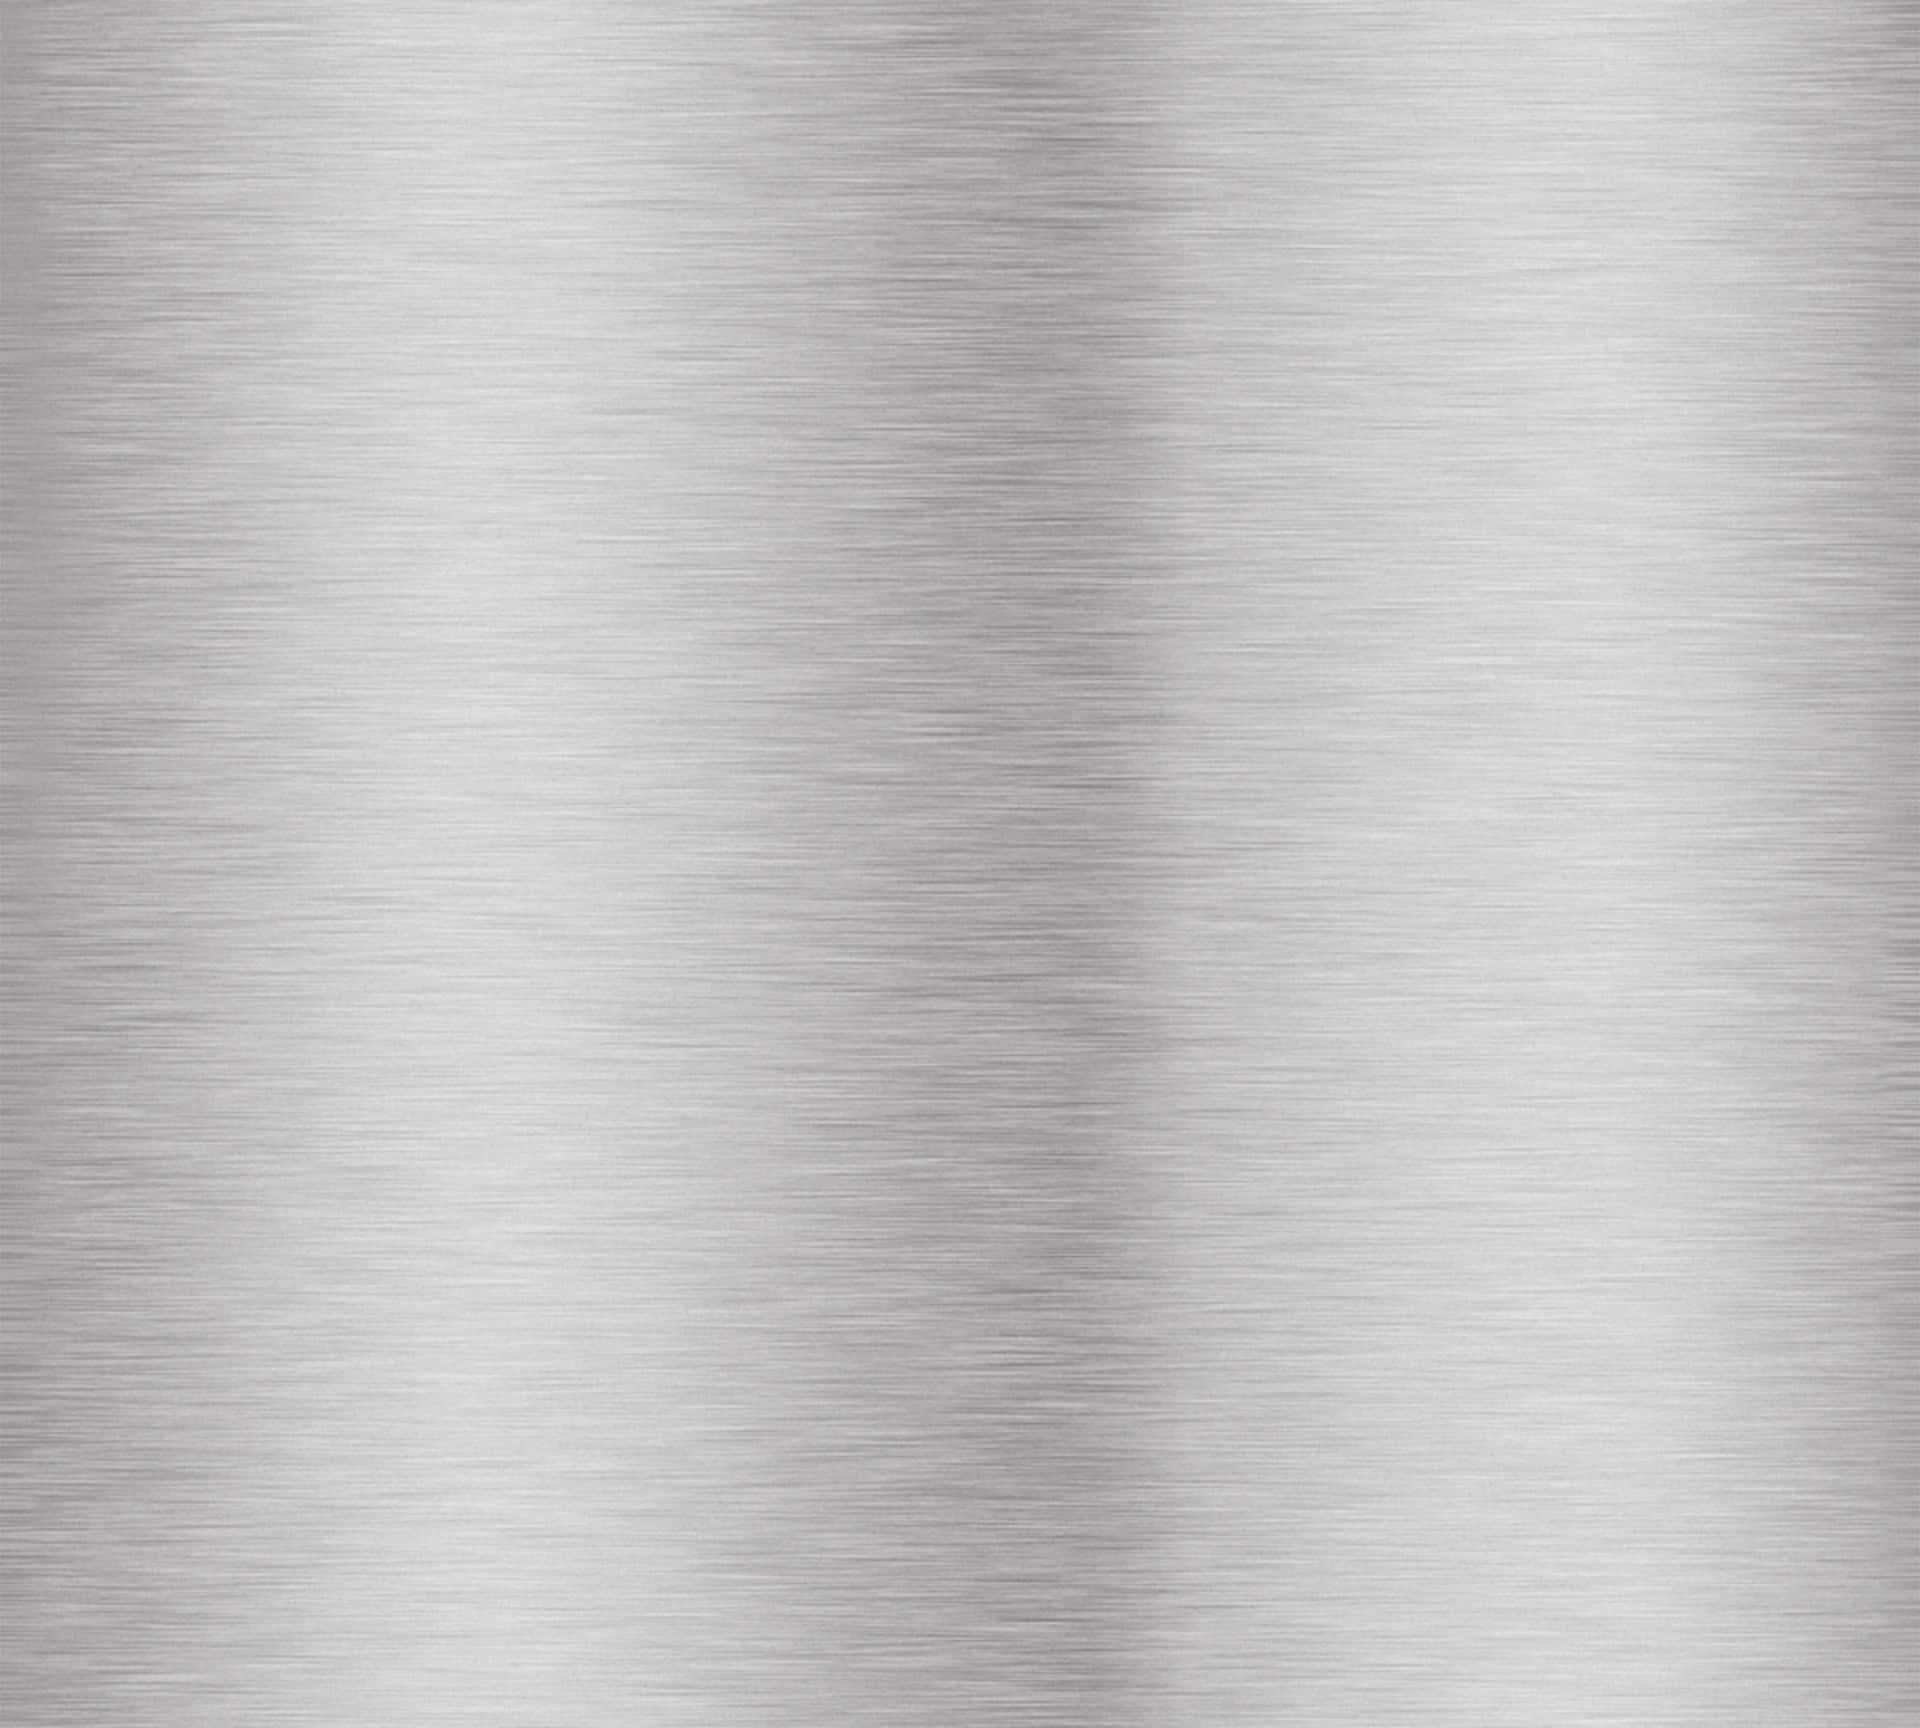 Metallic Silver Background Brushed Metal Finish